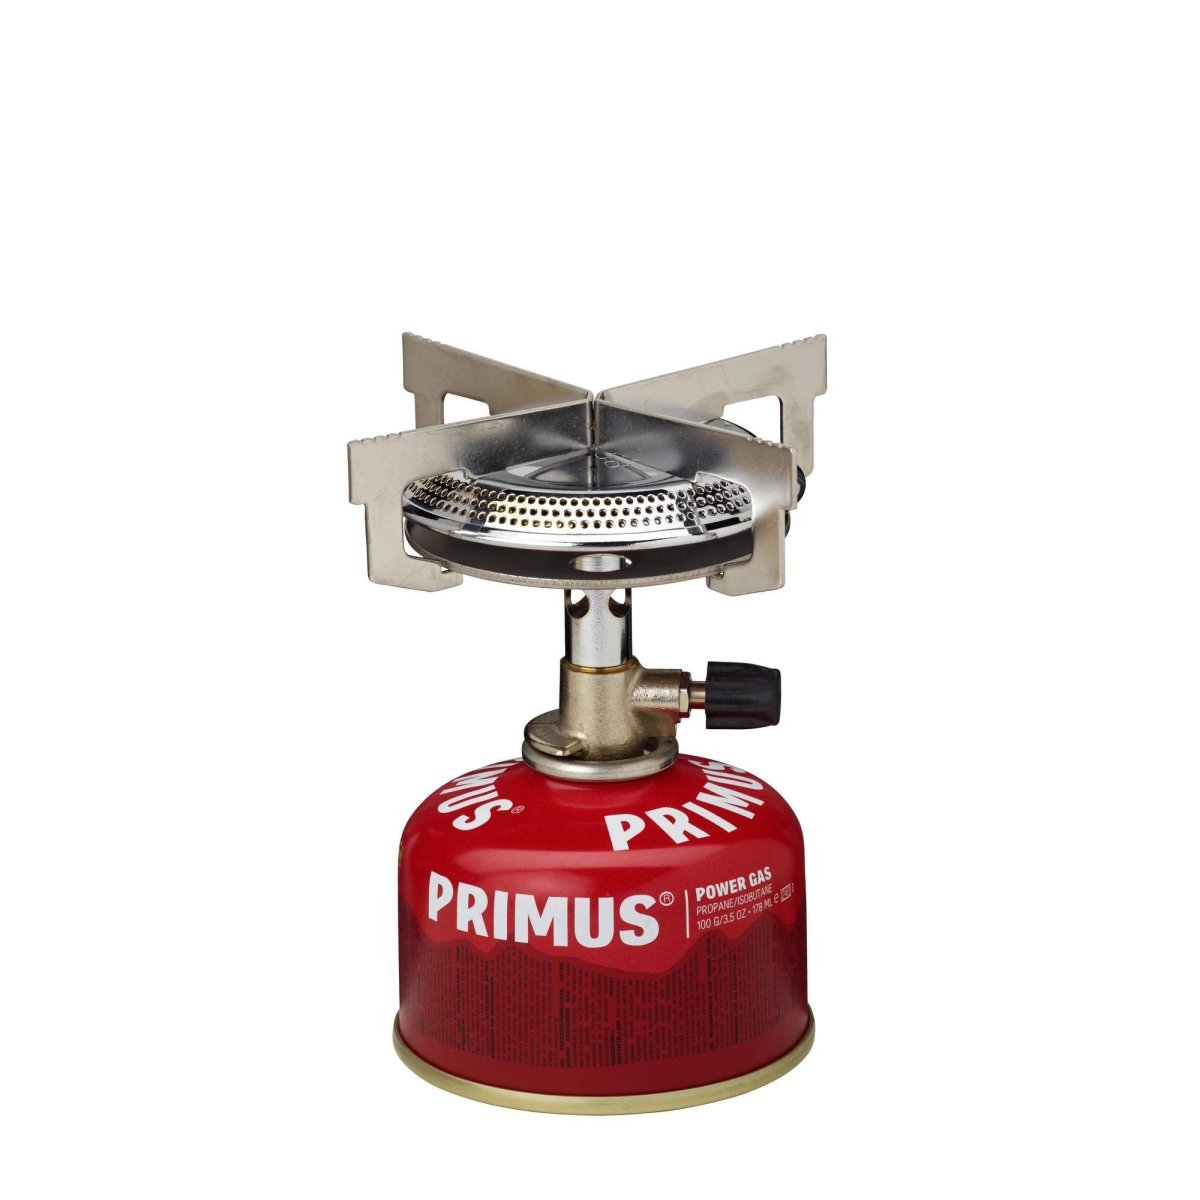 PRIMUS Mimer Stove | Primus | A247 Gear